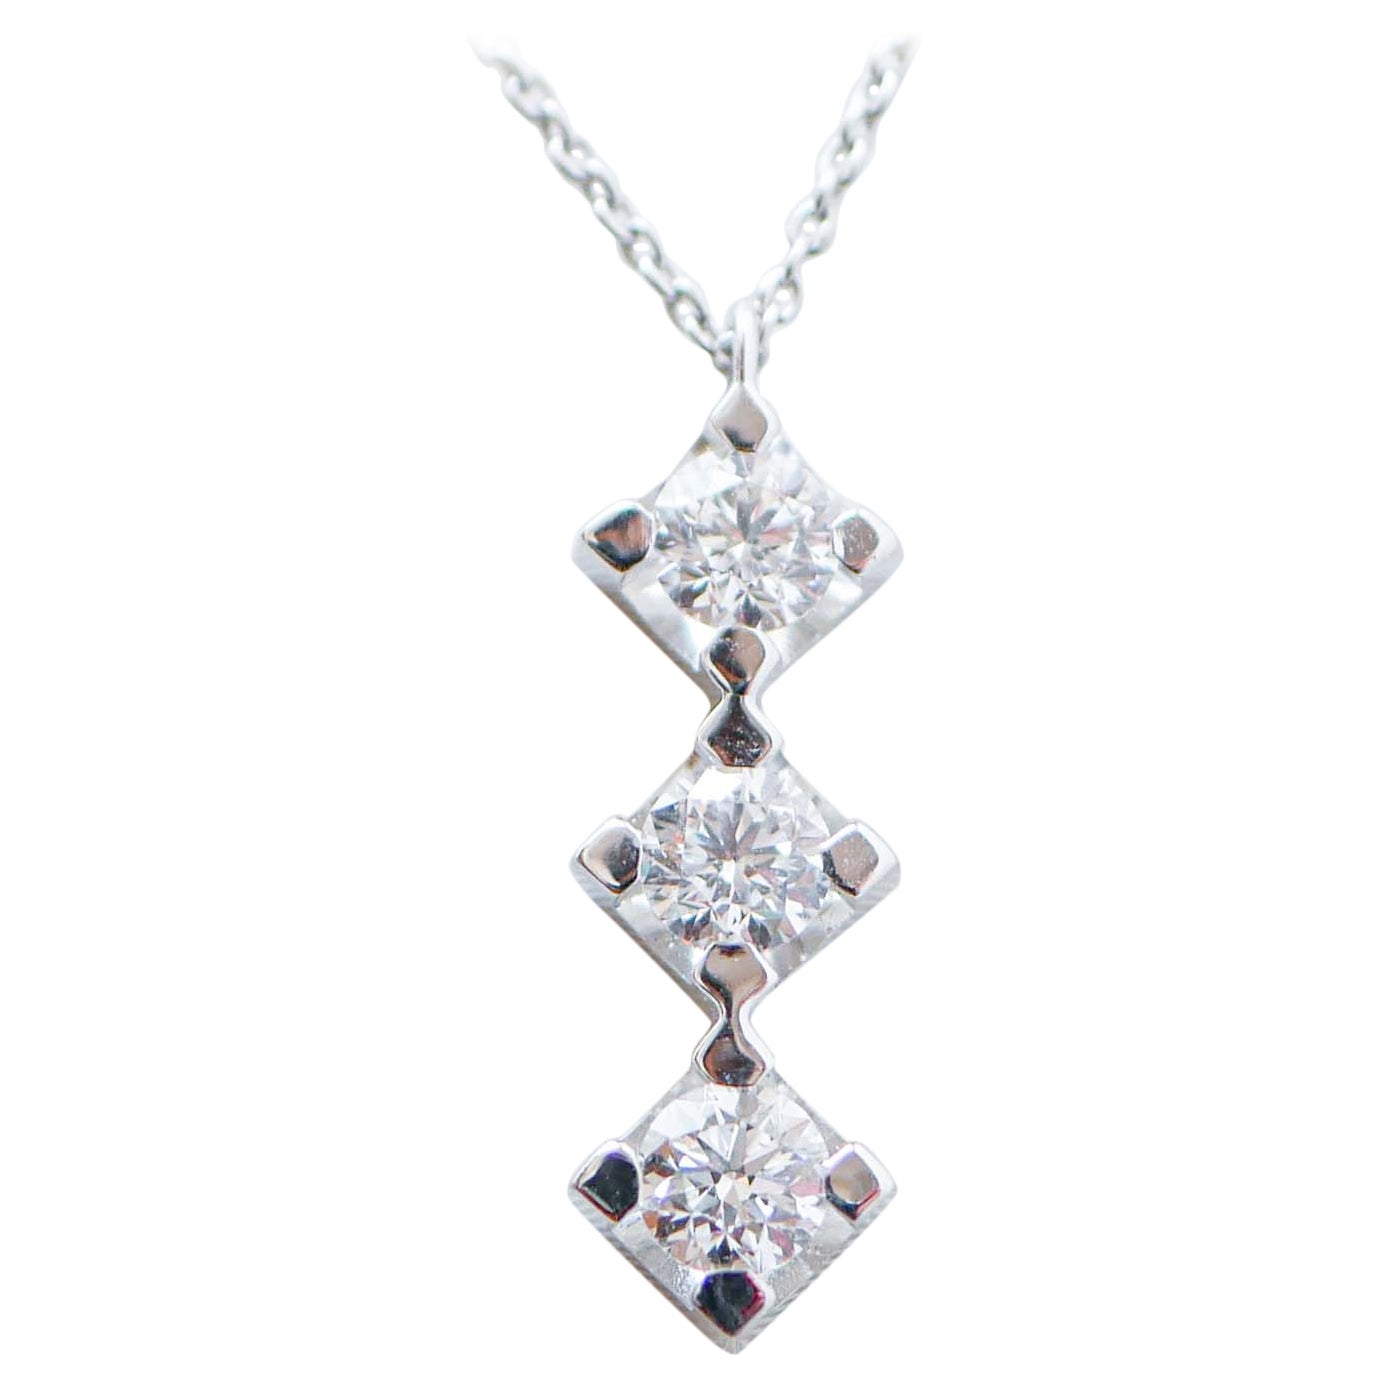 0.60 Carats Diamonds, 18 Karat White Gold Pendant Necklace. For Sale